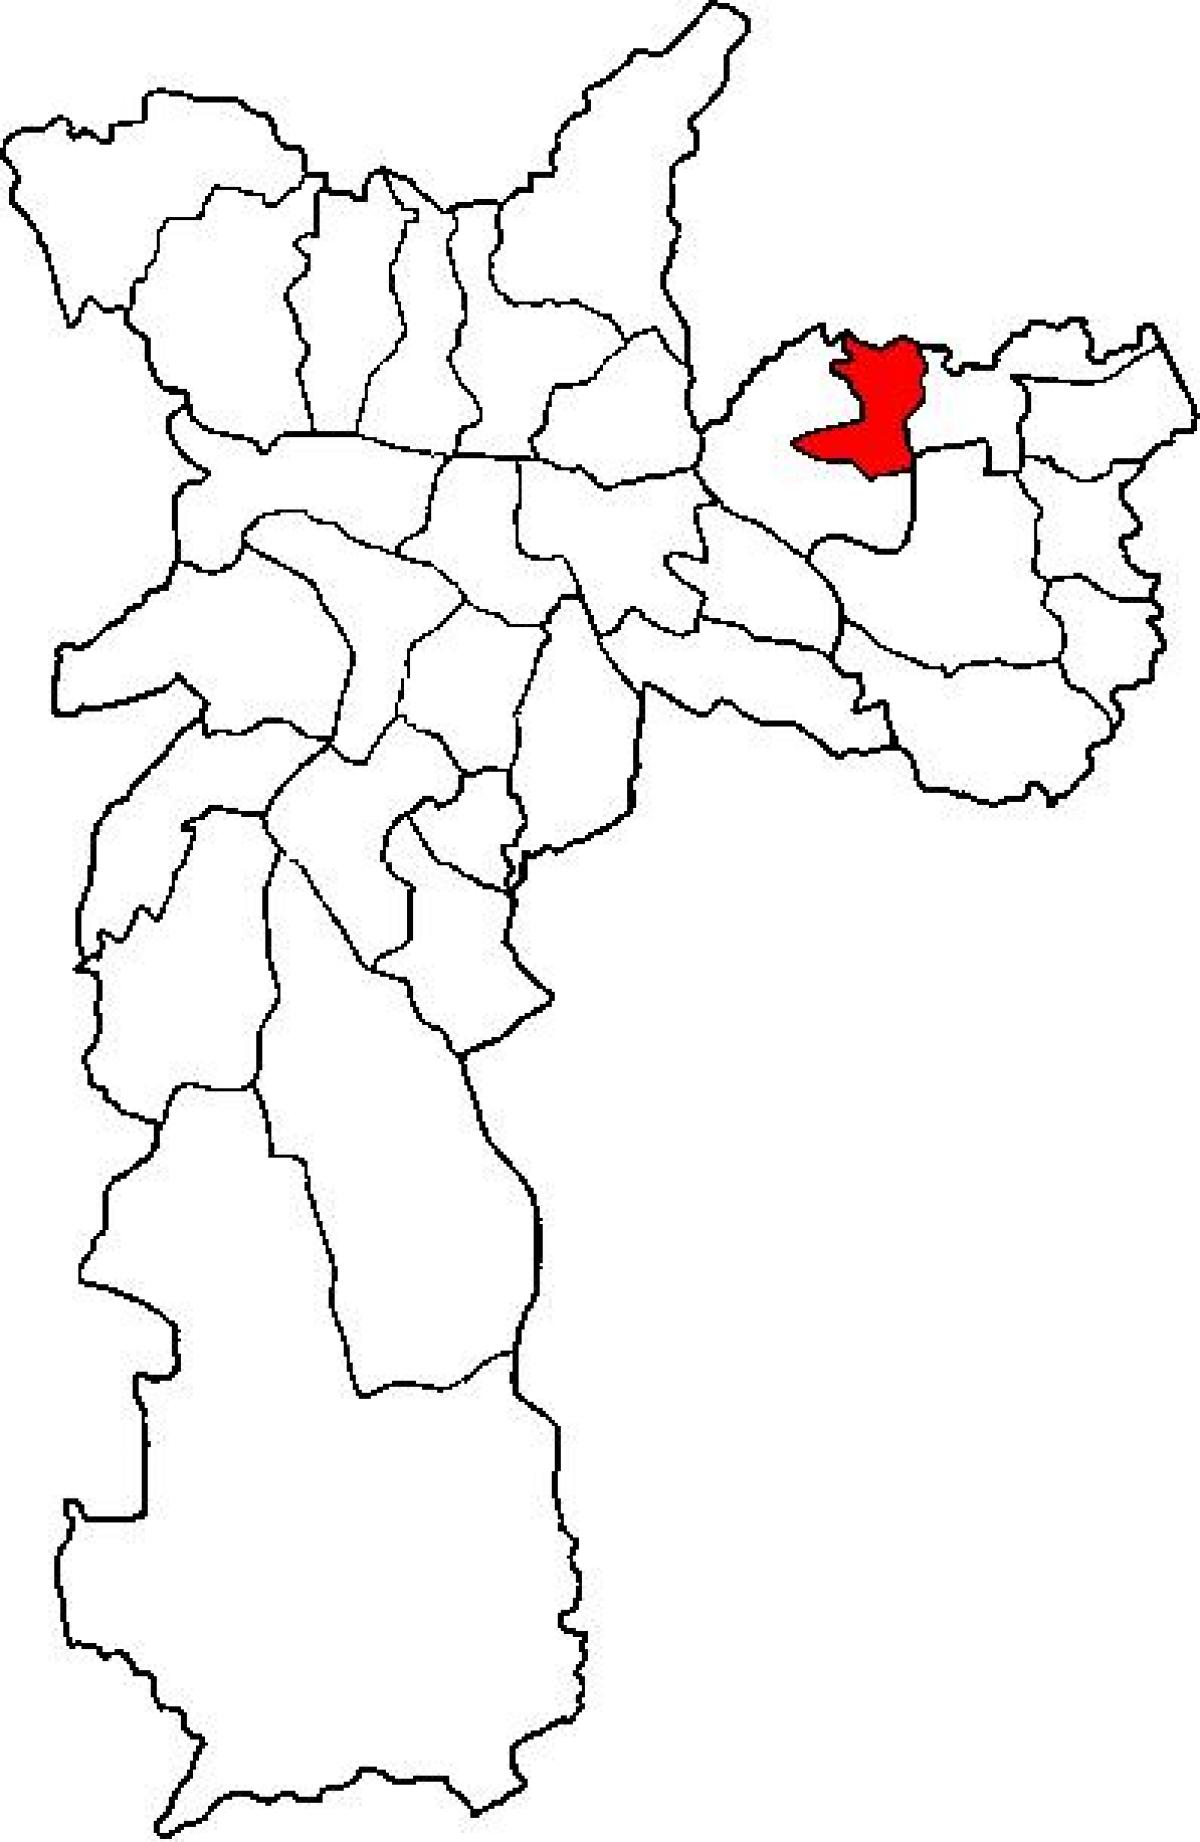 แผนที่ของ Ermelino Matarazzo รายการย่อยขอ prefecture São Paulo